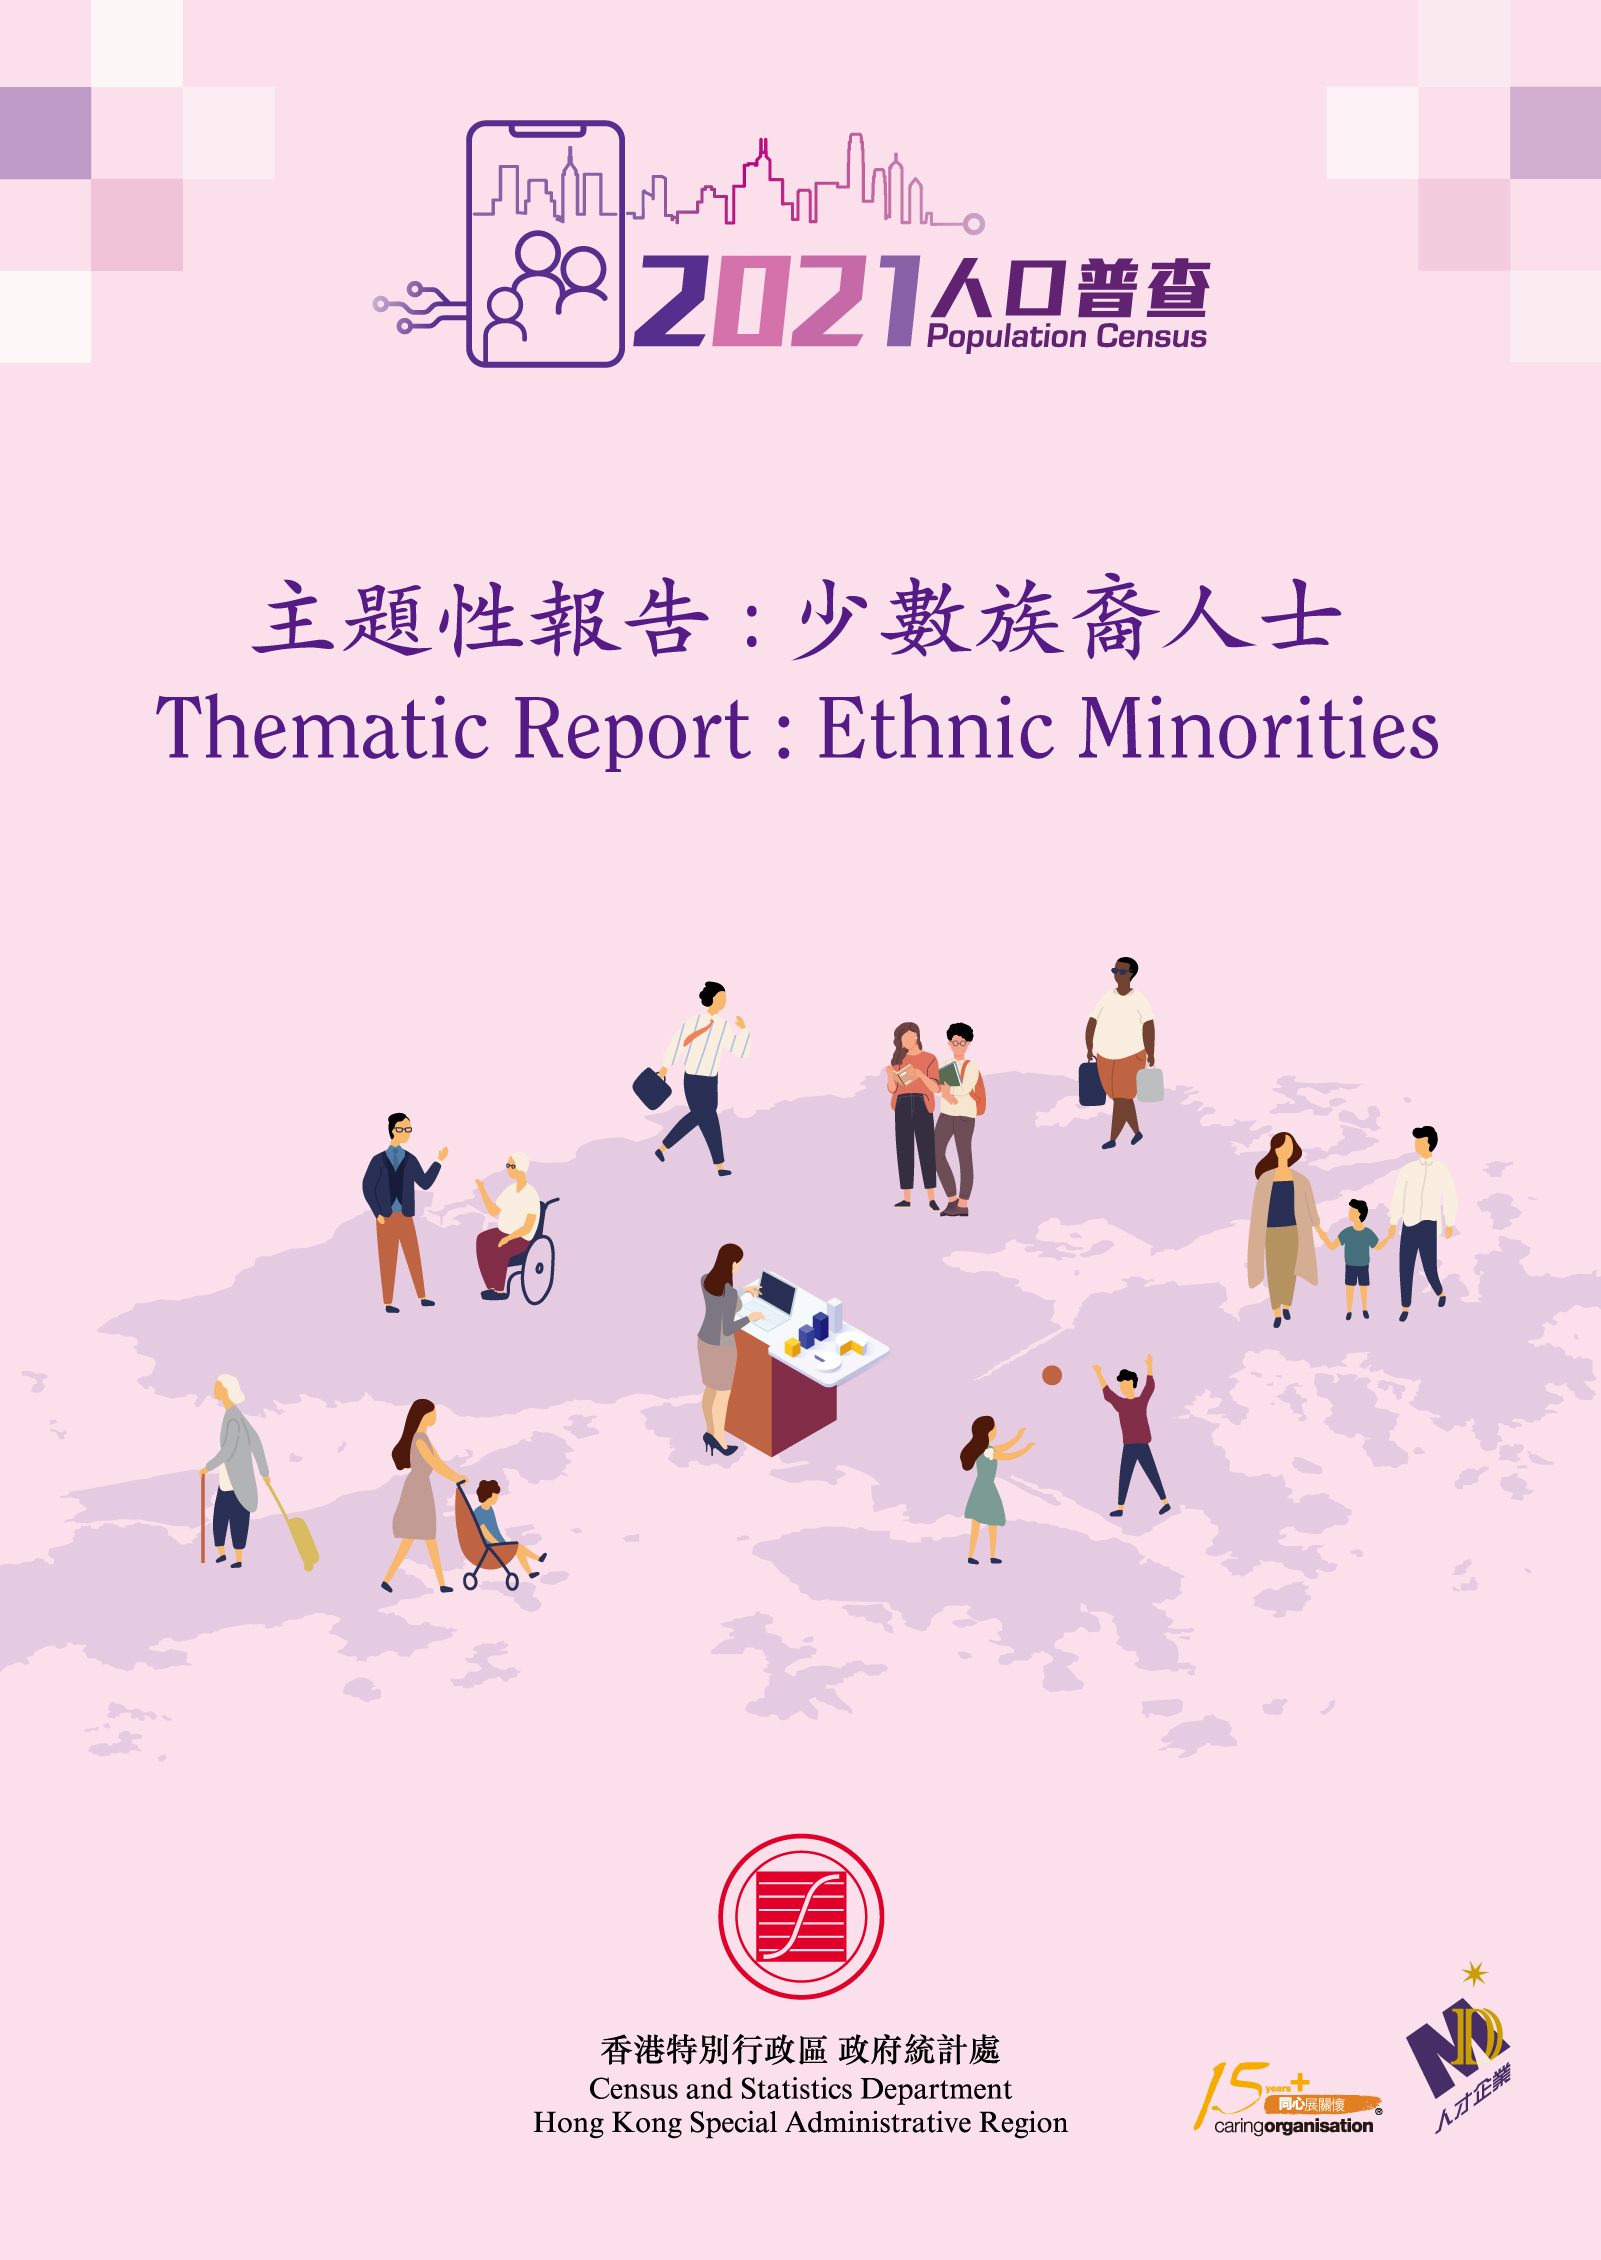 Thematic Report: Ethnic Minorities